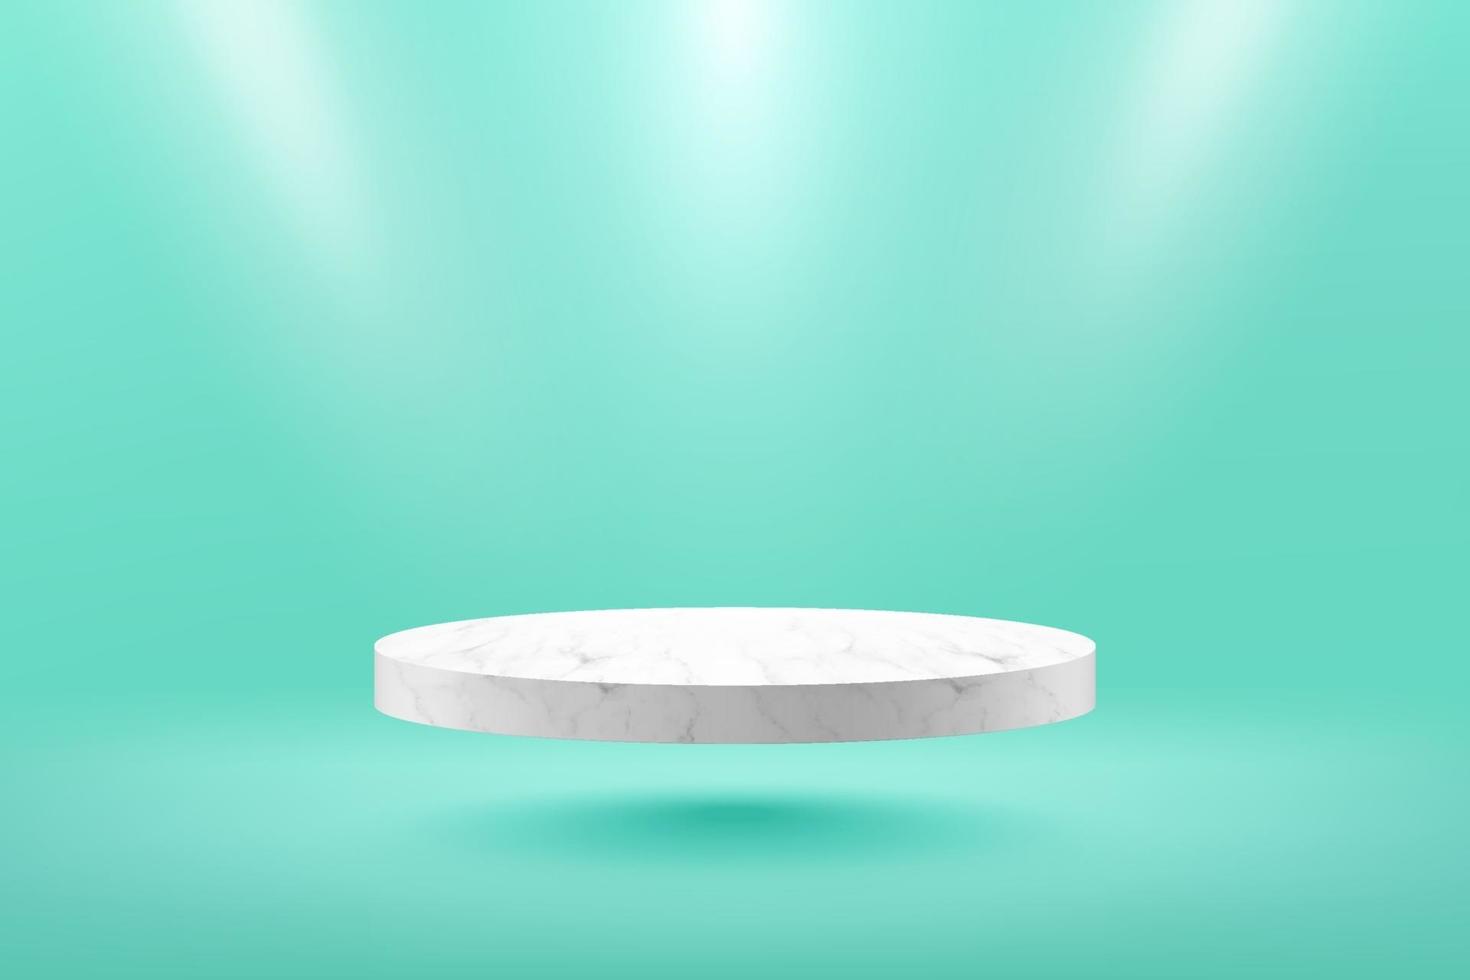 podio de cilindro de mármol blanco flotante moderno con una habitación vacía de color verde claro y un fondo de luz puntual. Representación vectorial abstracta en 3D para la exhibición de productos publicitarios. sala de estudio de escena mínima. vector